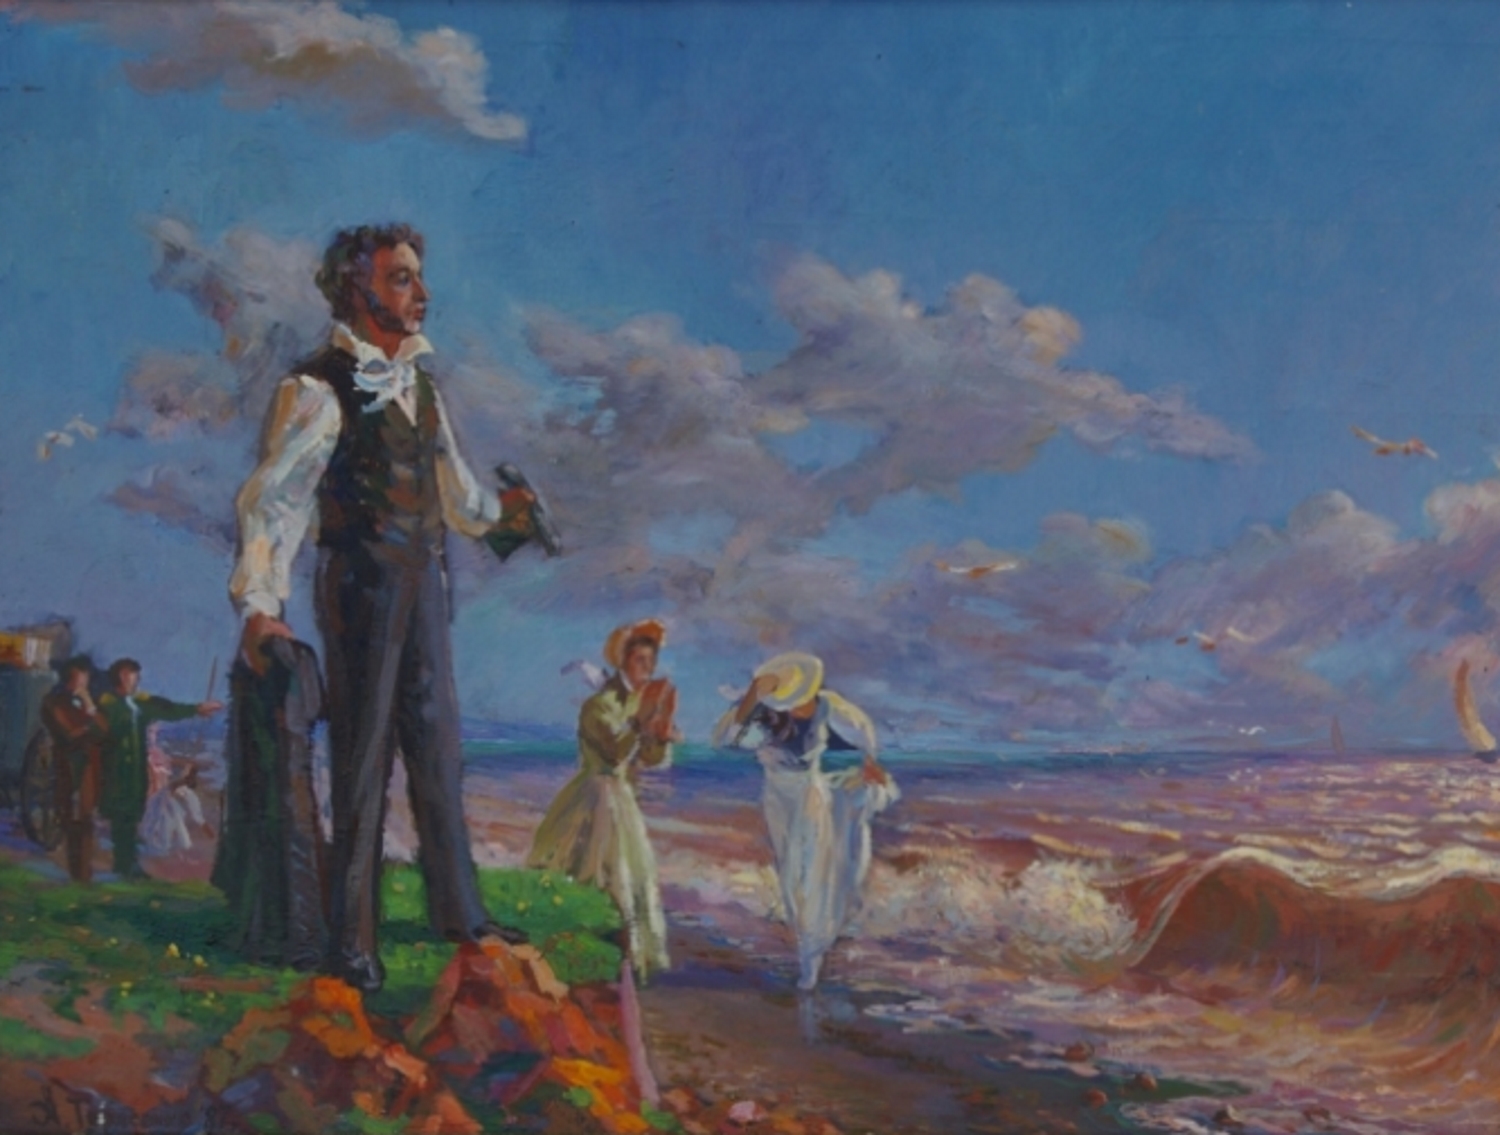 Пушкин в Крыму 1820г